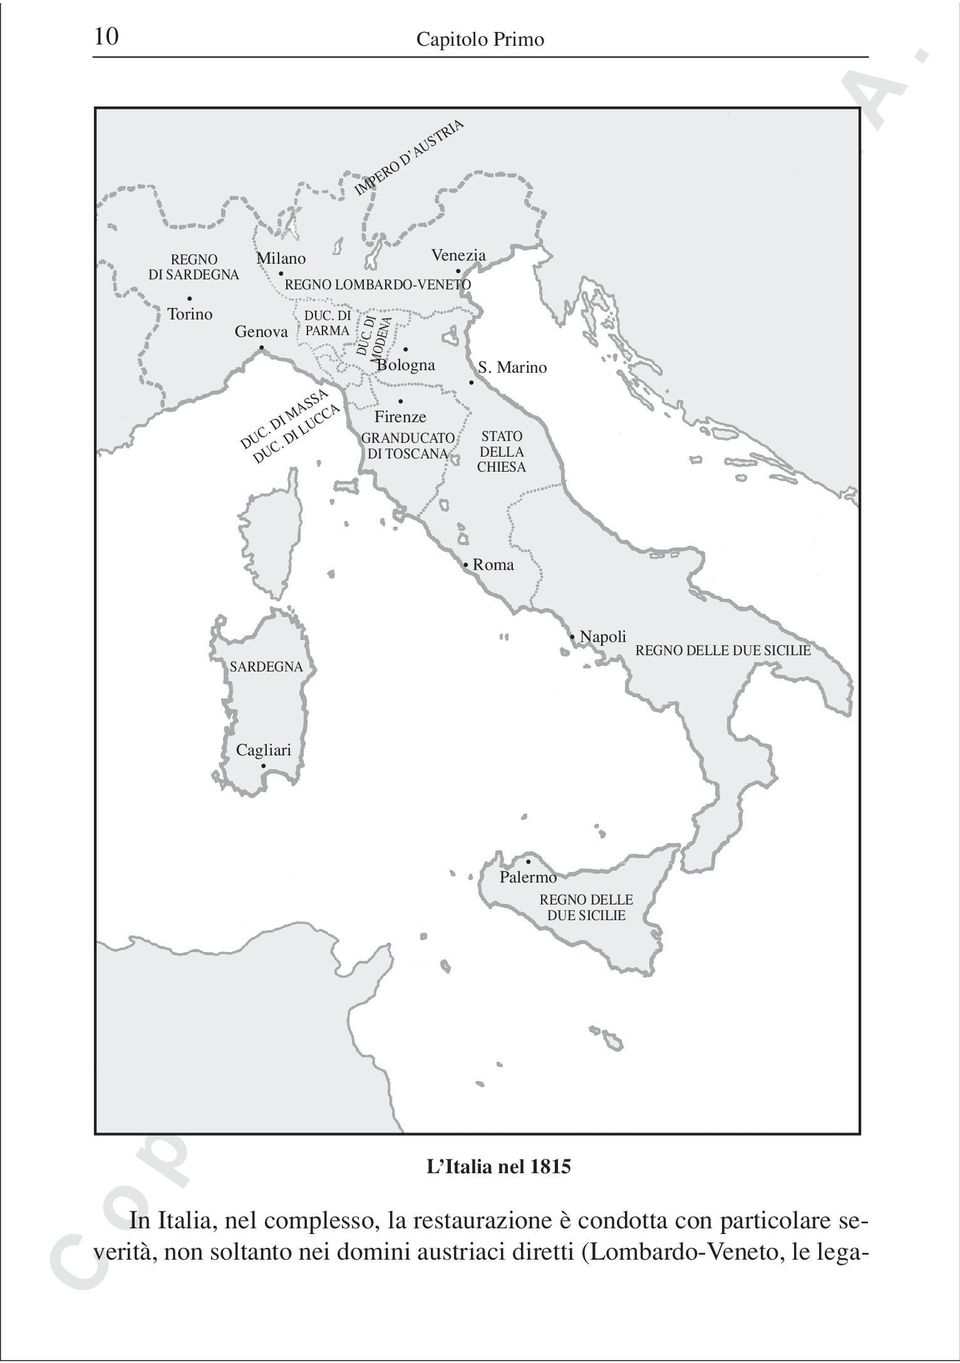 DI MODENA Roma Napoli REGNO DELLE DUE SICILIE Palermo REGNO DELLE DUE SICILIE L Italia nel 1815 In Italia, nel